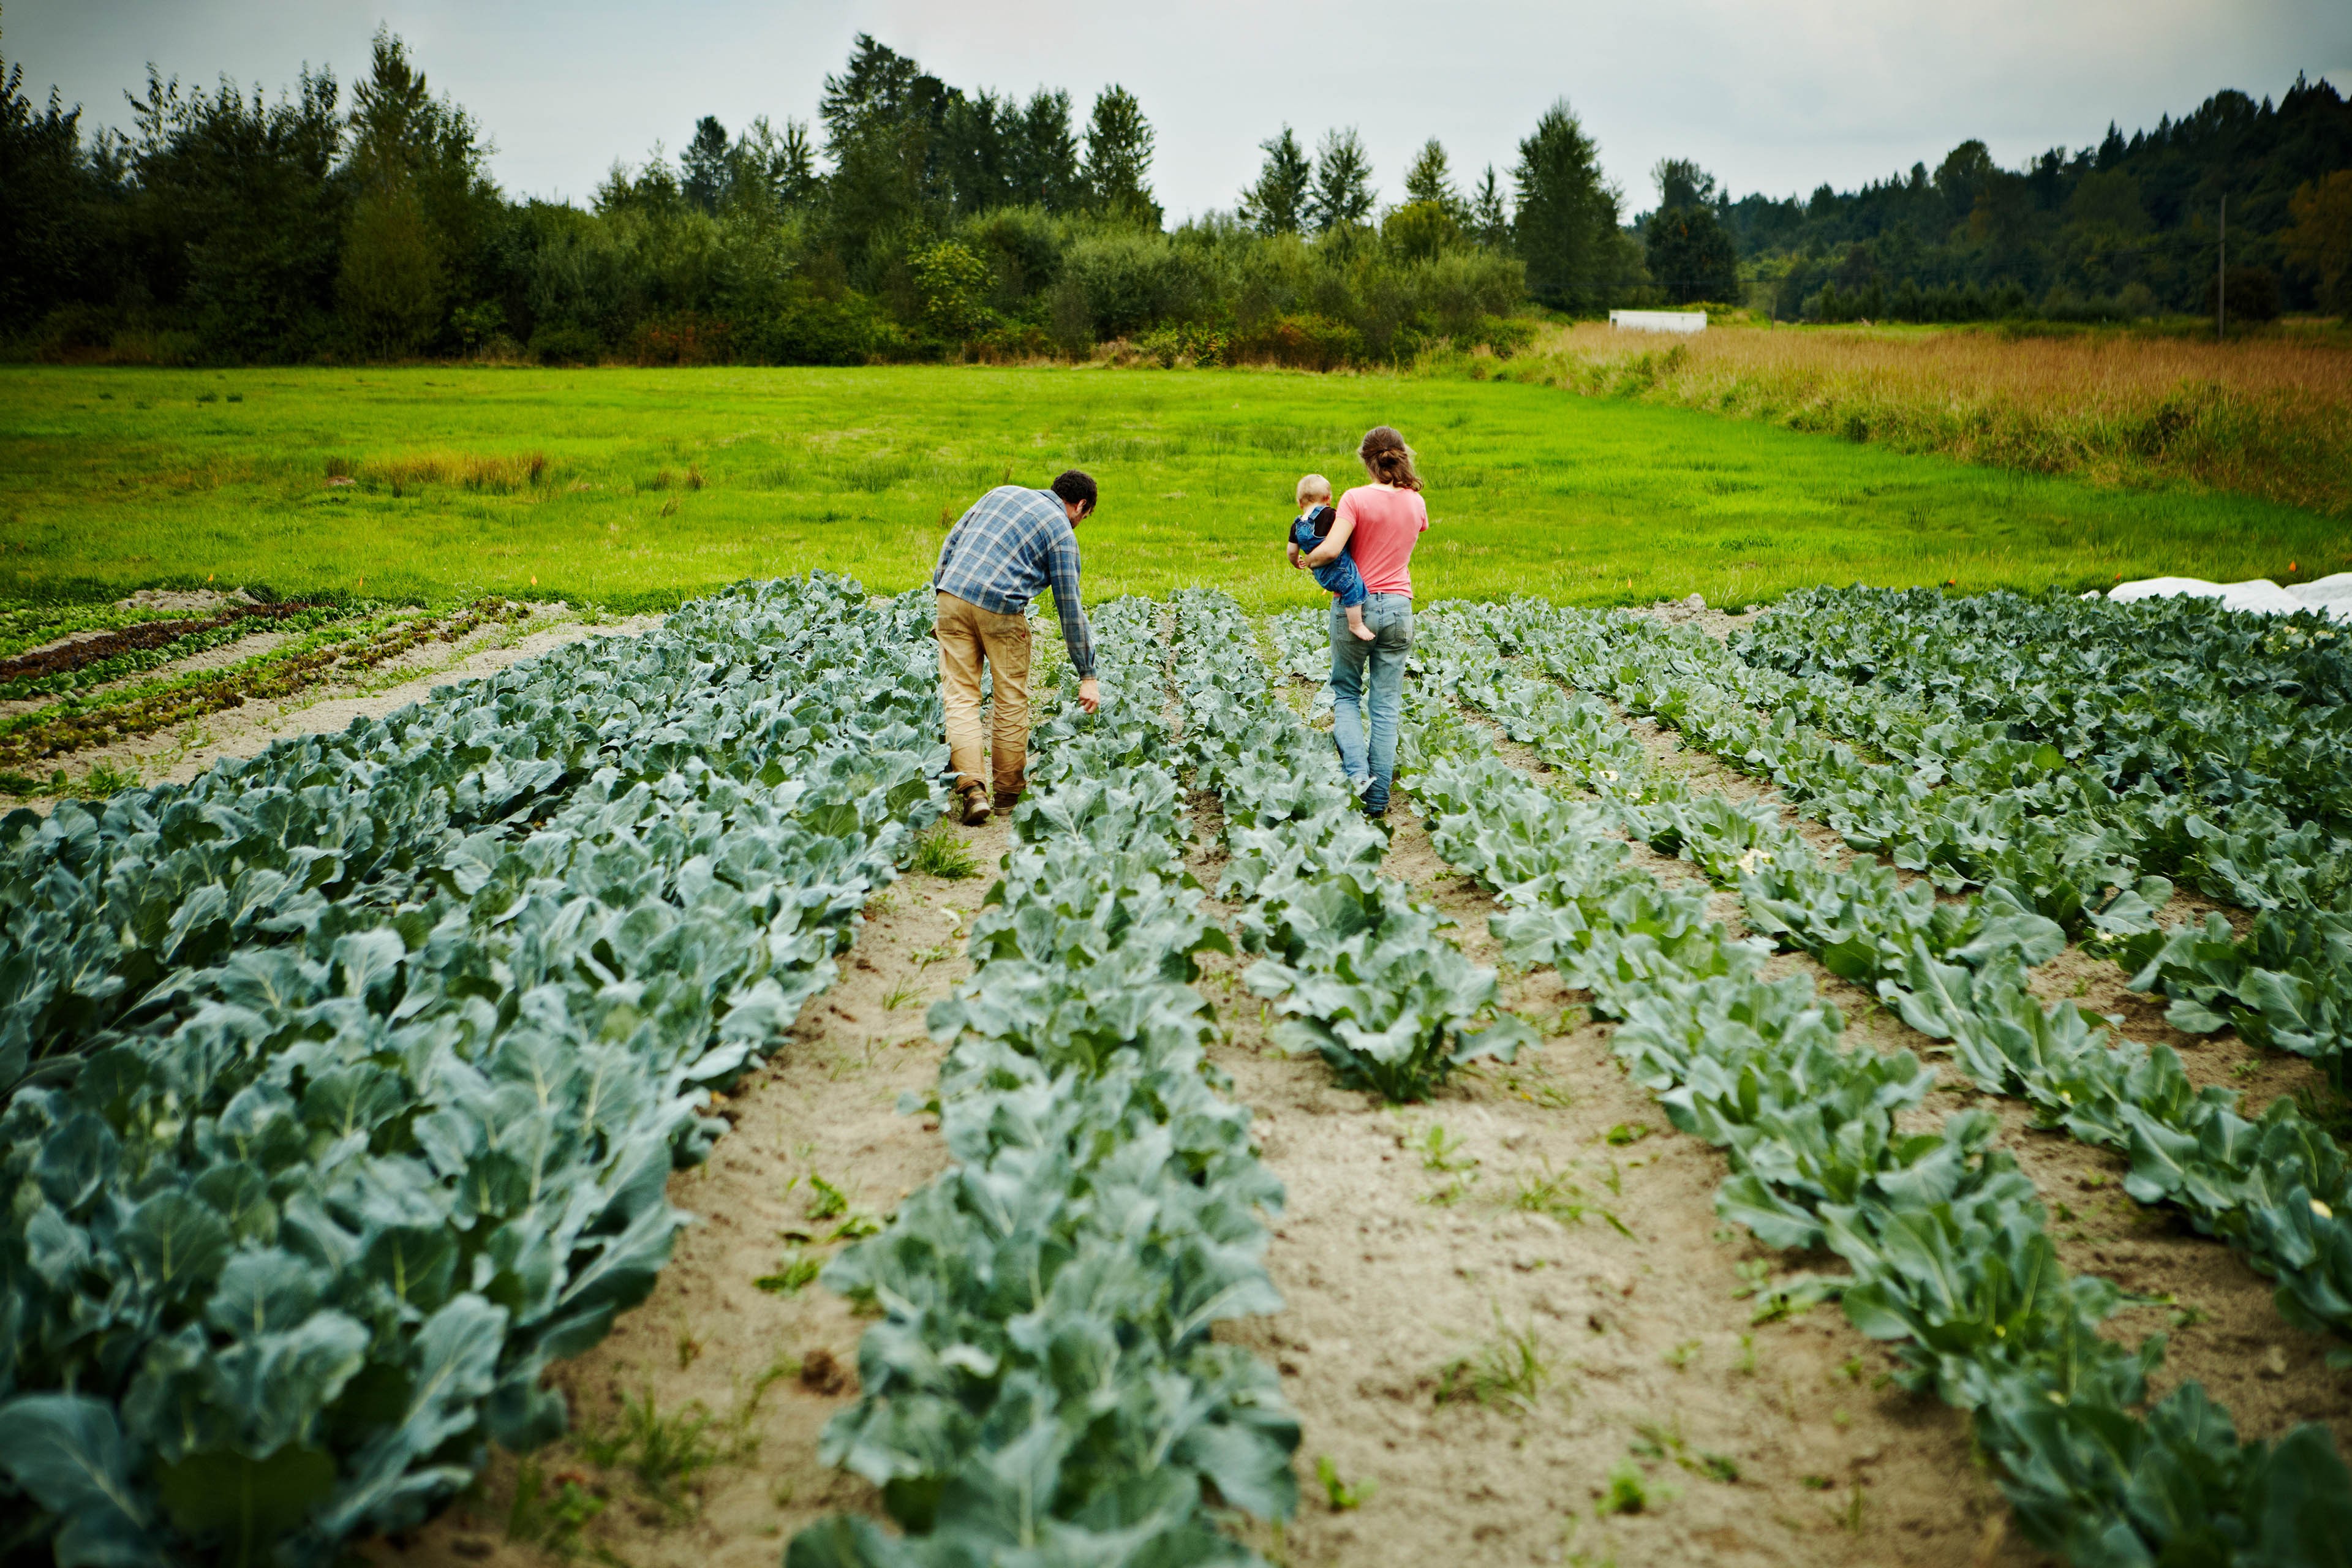 ey-farmers-walking-holding-baby-walking-in-field.jpg.rendition.3840.2560